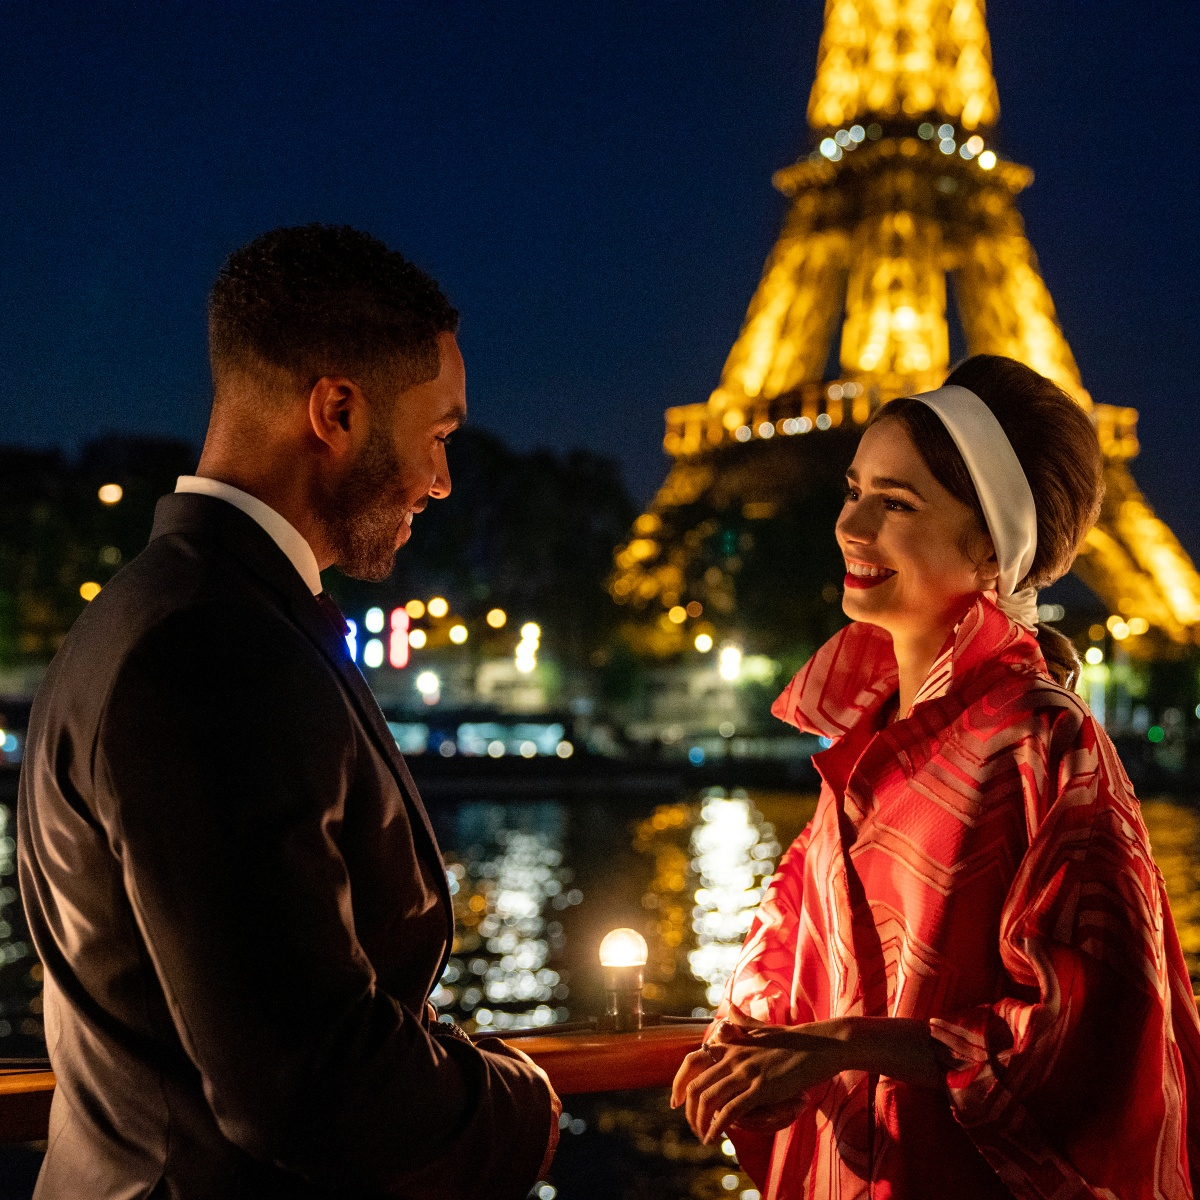 Emily In Paris' Season 2: How Old Is Emily in 'Emily in Paris